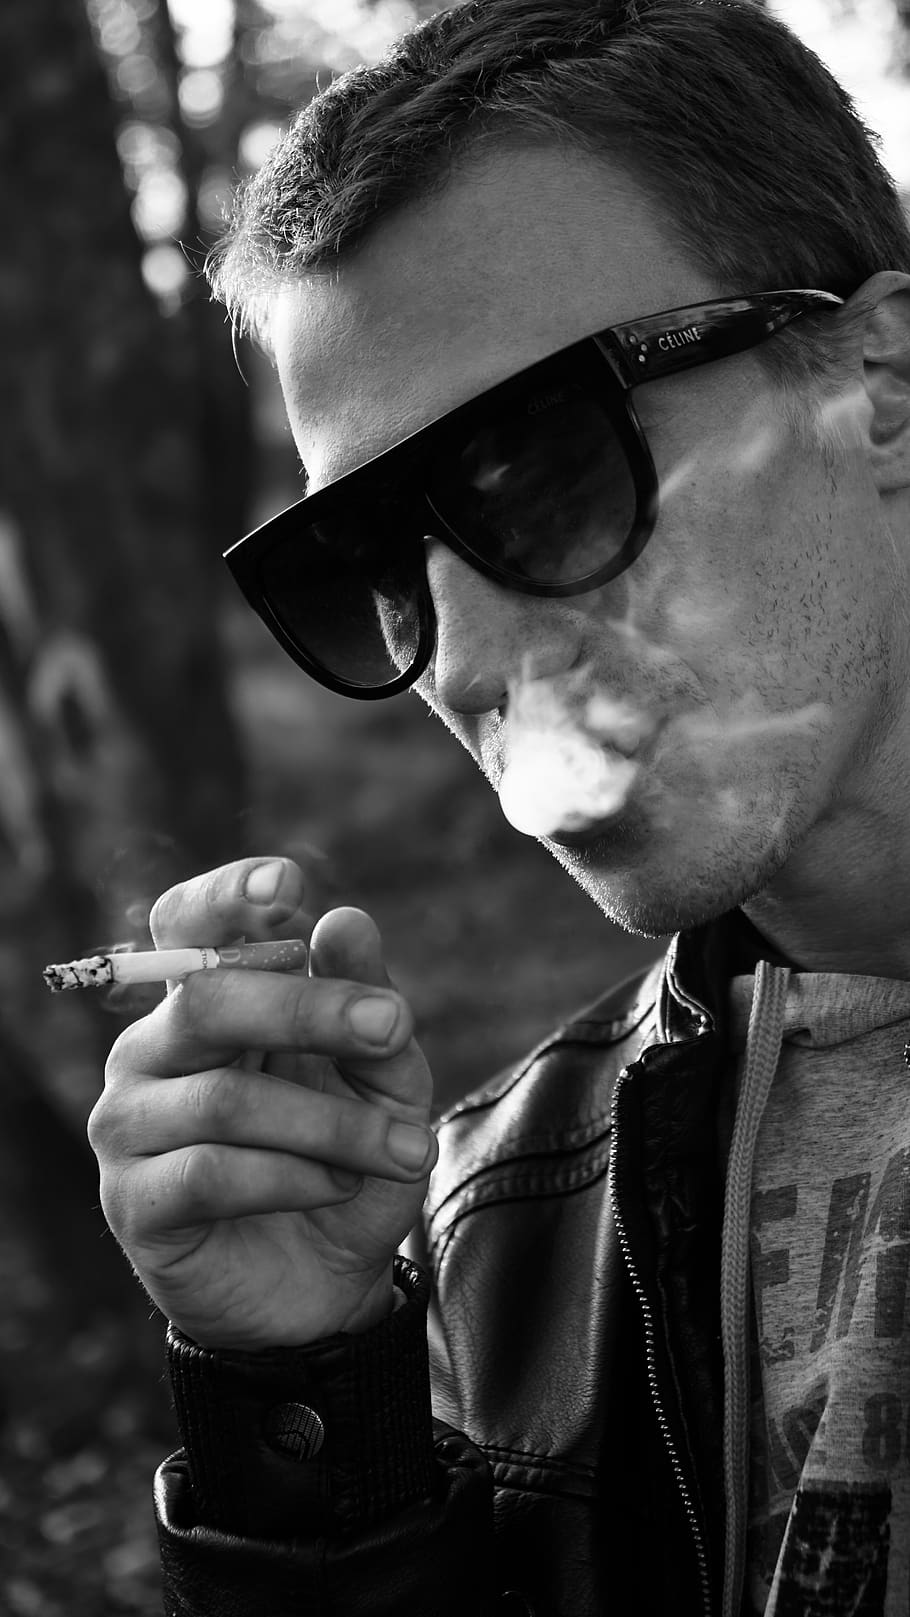 fumar, cigarro, hábito, homem, cigarros, tabaco, nicotina, fumante, óculos, uma pessoa